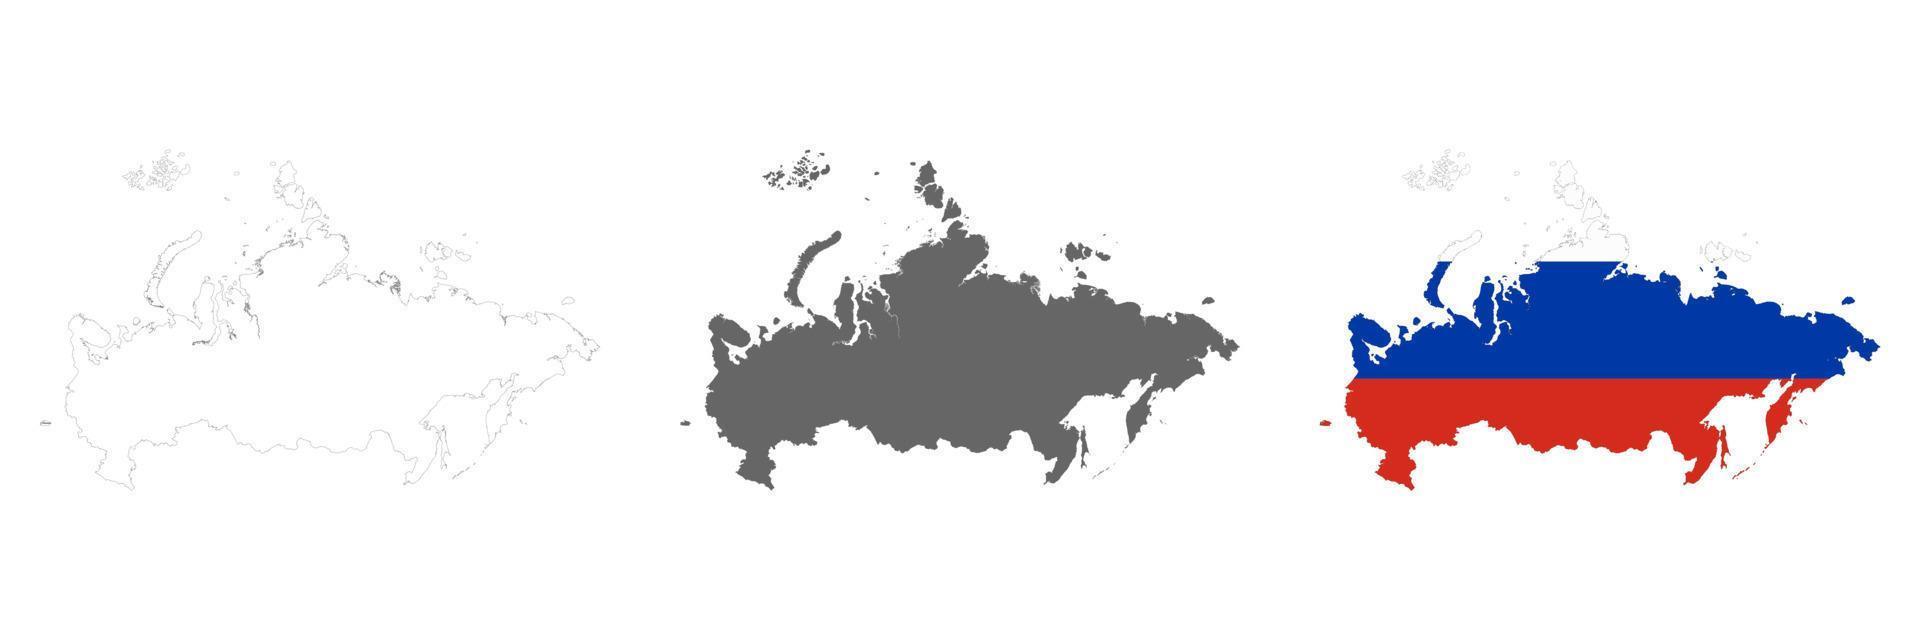 Sehr detaillierte Karte der Russischen Föderation mit auf dem Hintergrund isolierten Grenzen vektor